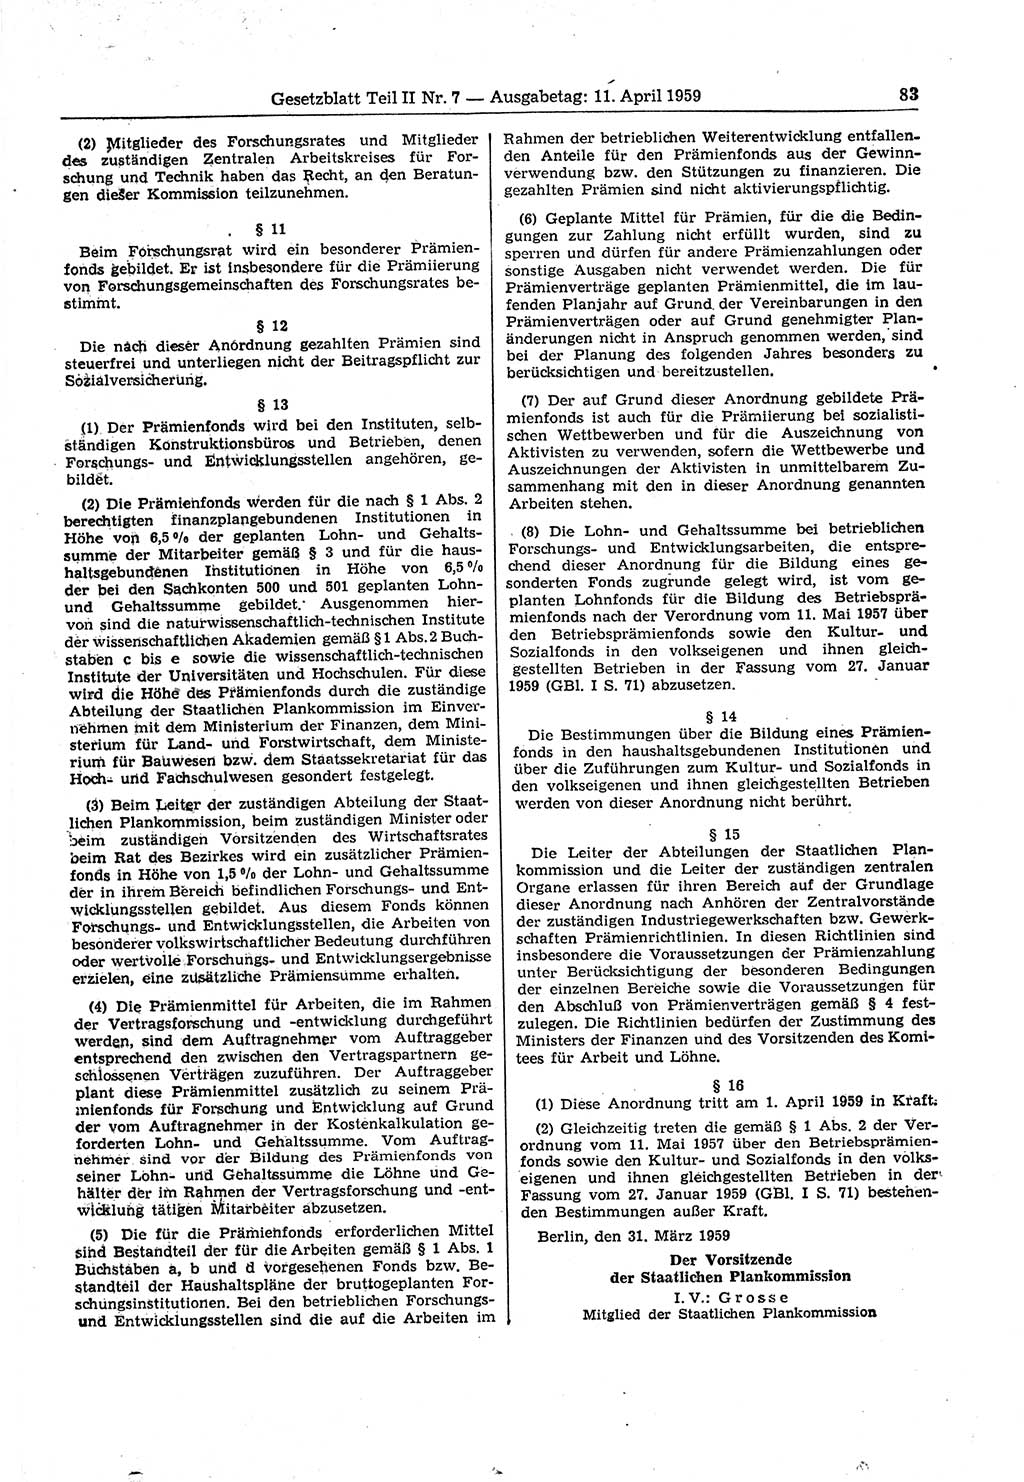 Gesetzblatt (GBl.) der Deutschen Demokratischen Republik (DDR) Teil ⅠⅠ 1959, Seite 83 (GBl. DDR ⅠⅠ 1959, S. 83)